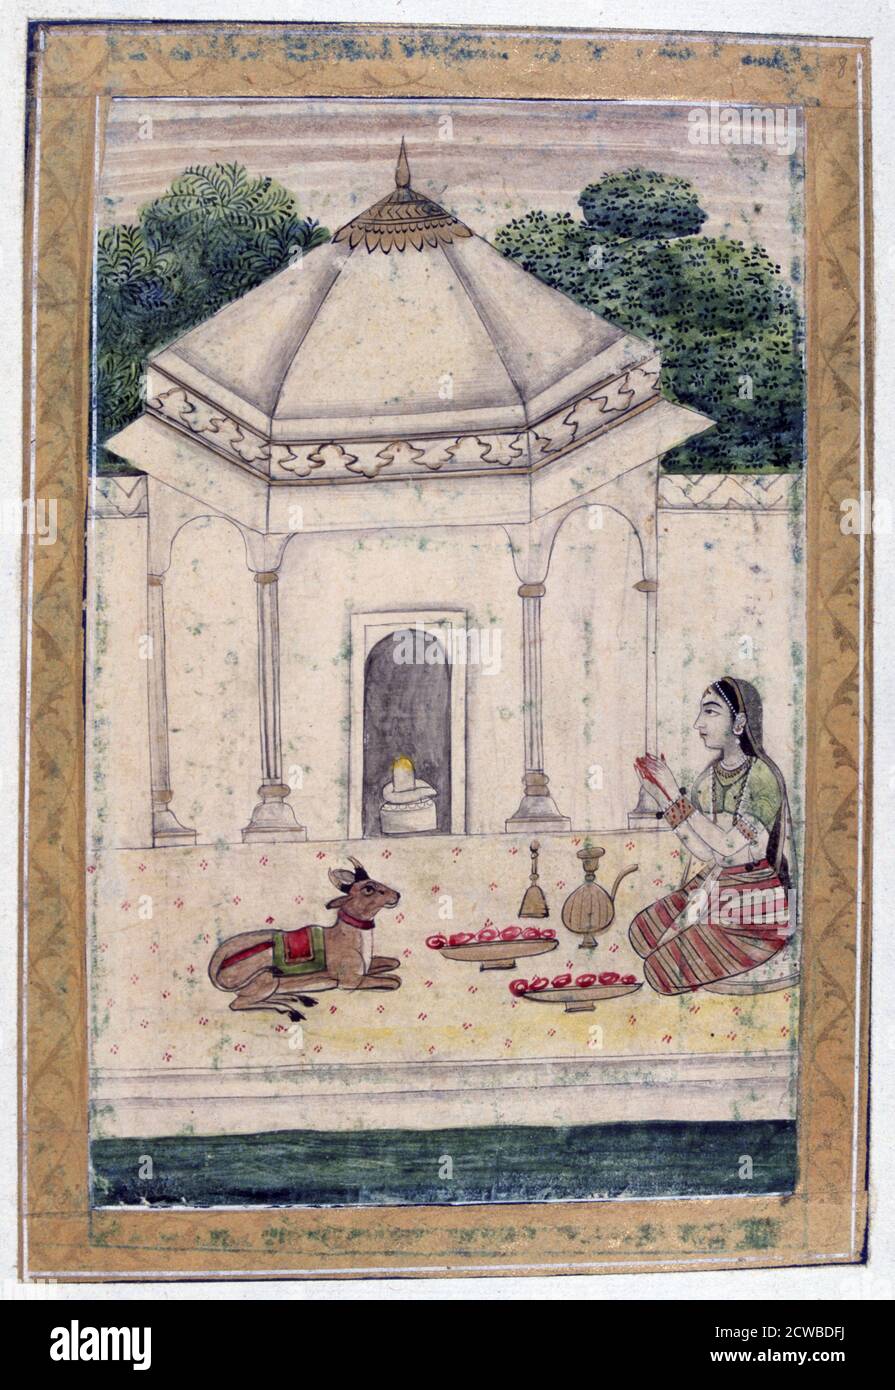 Bhairavi Ramini, Ragamala Album, School of Rajasthan, 19. Jahrhundert. Verehrung des Lingam von Shiva durch eine junge Frau. Der Lingam (auch Linga, was Zeichen bedeutet, oder Zeichen) ist ein Symbol für die Anbetung des Hindu-gottes Shiva. Gefunden in der Sammlung von Jean Claude Carriere. Der Künstler ist unbekannt. Stockfoto